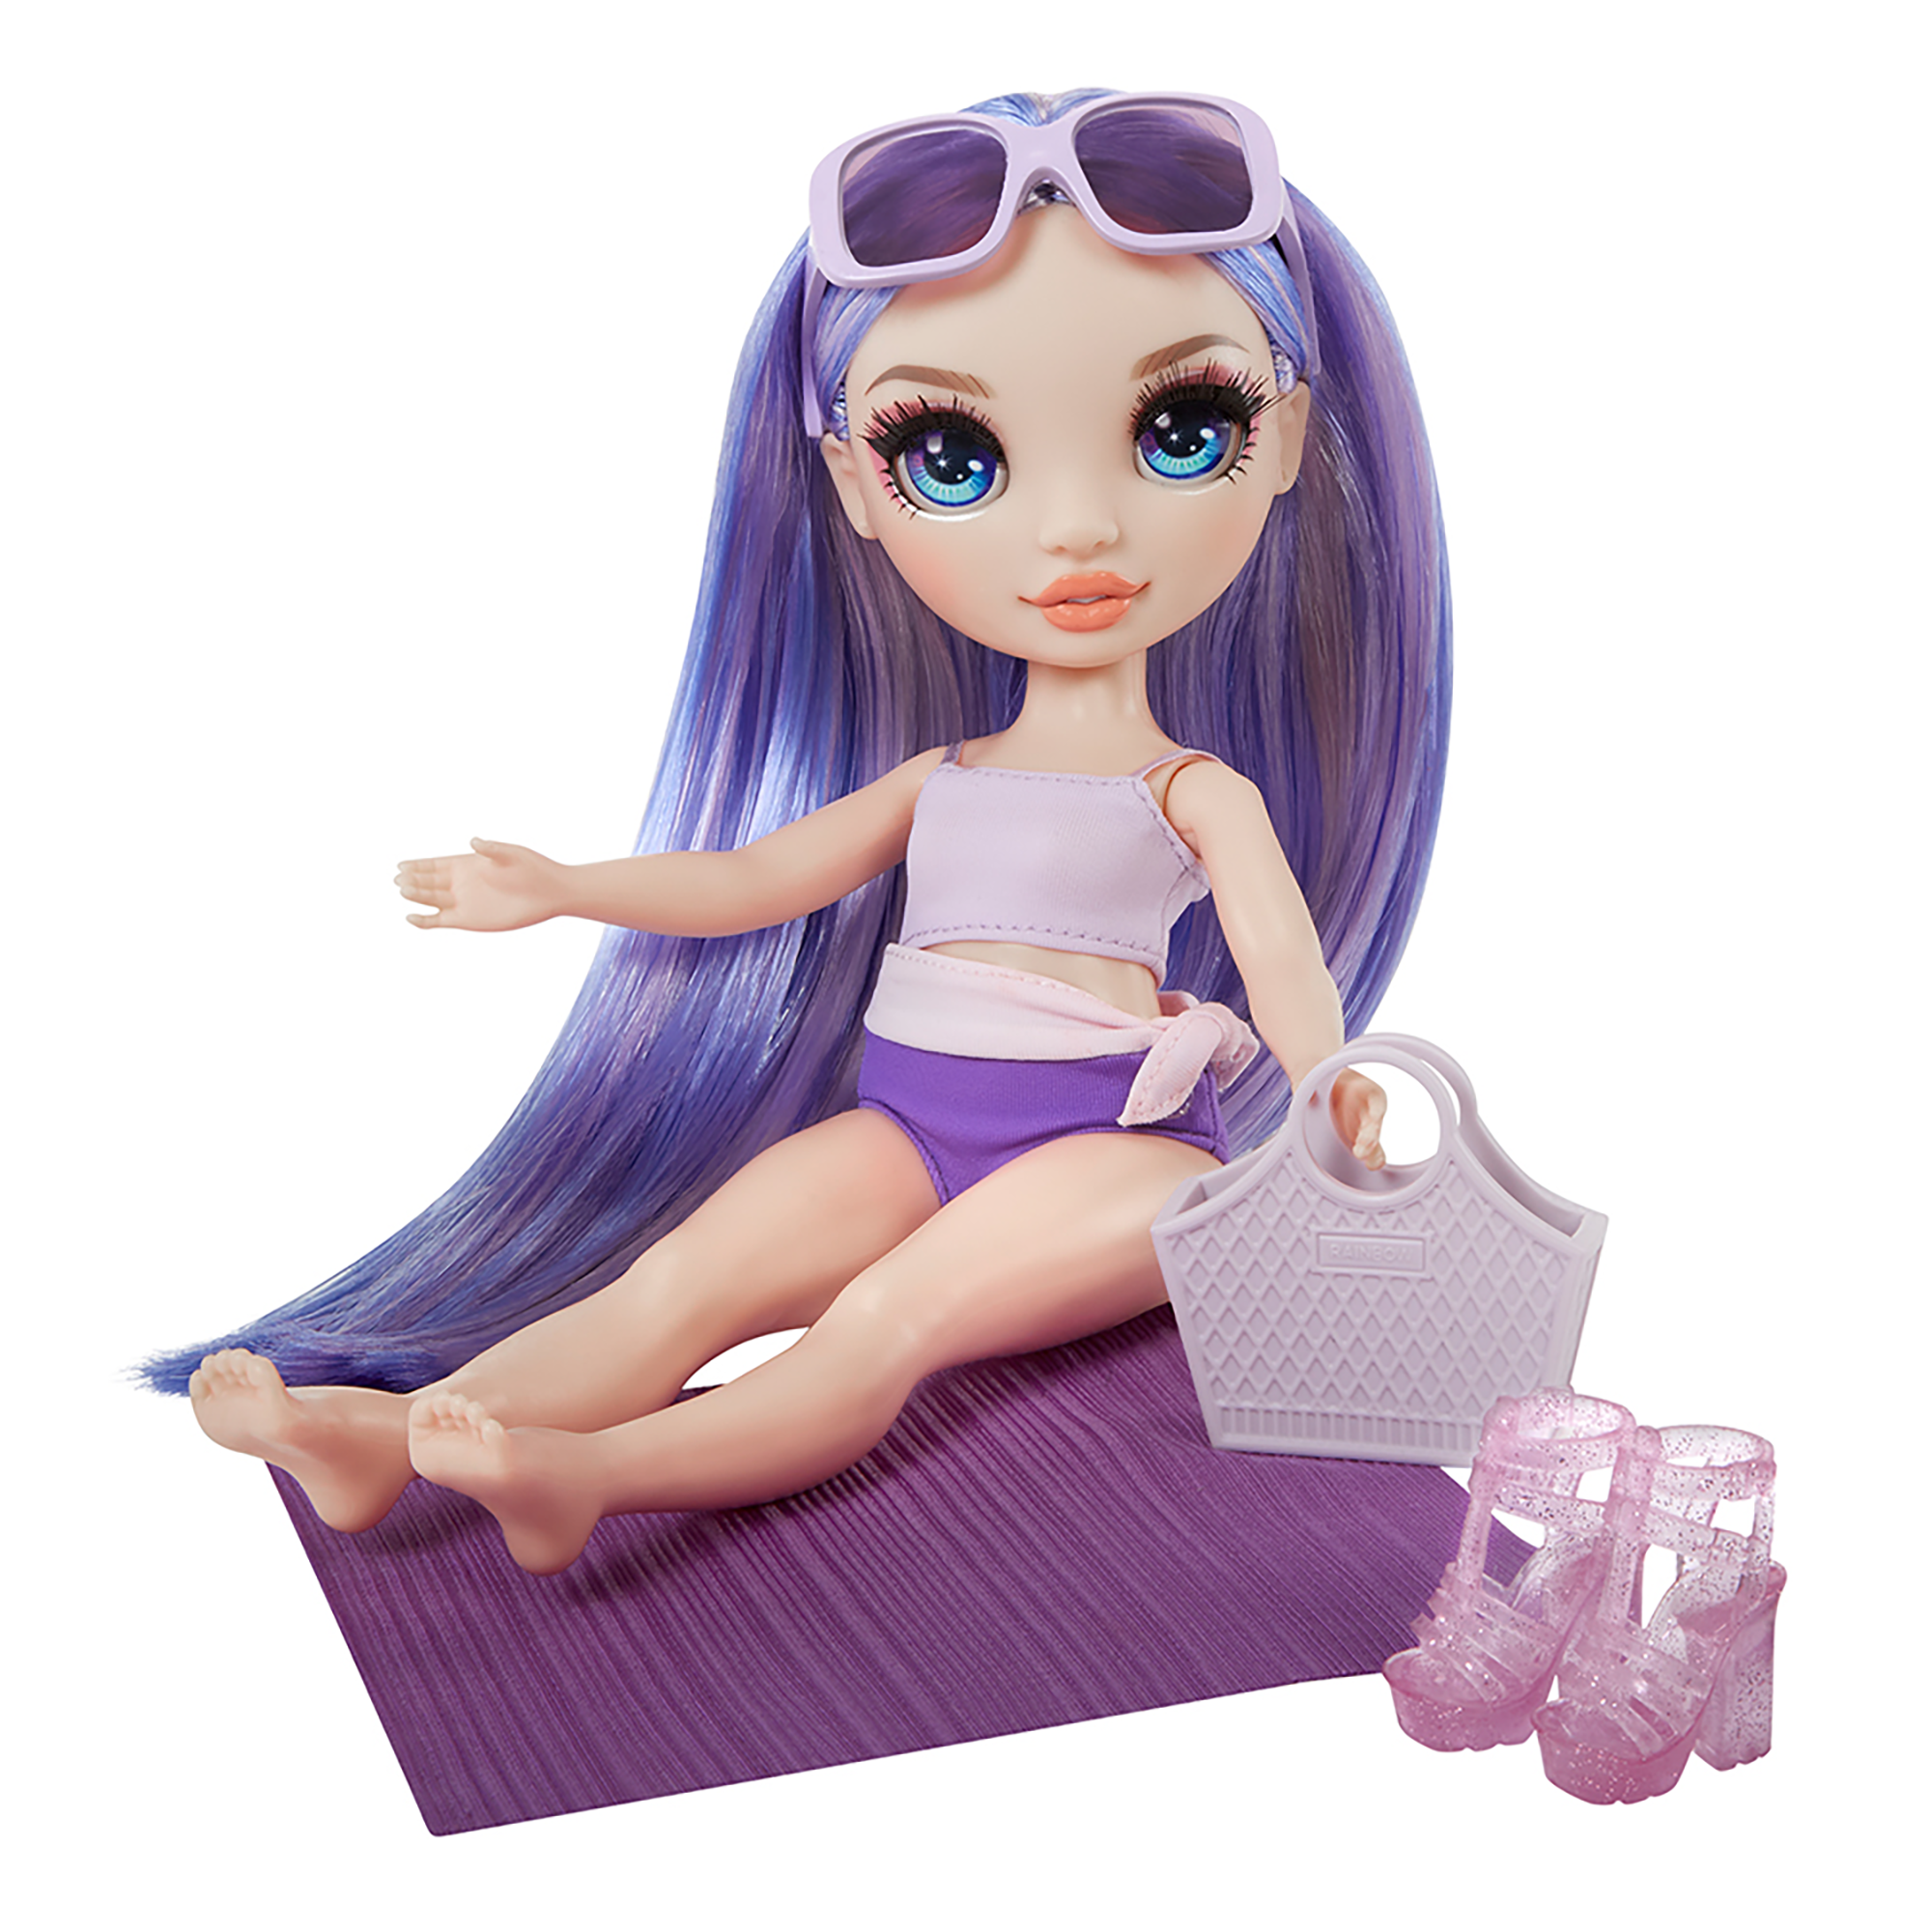 Rainbow high swim & style - violet (viola) - bambola da 28 cm con confezione scintillante e oltre 10 outfit - costume da bagno rimovibile, sandali, accessori divertenti - Rainbow High